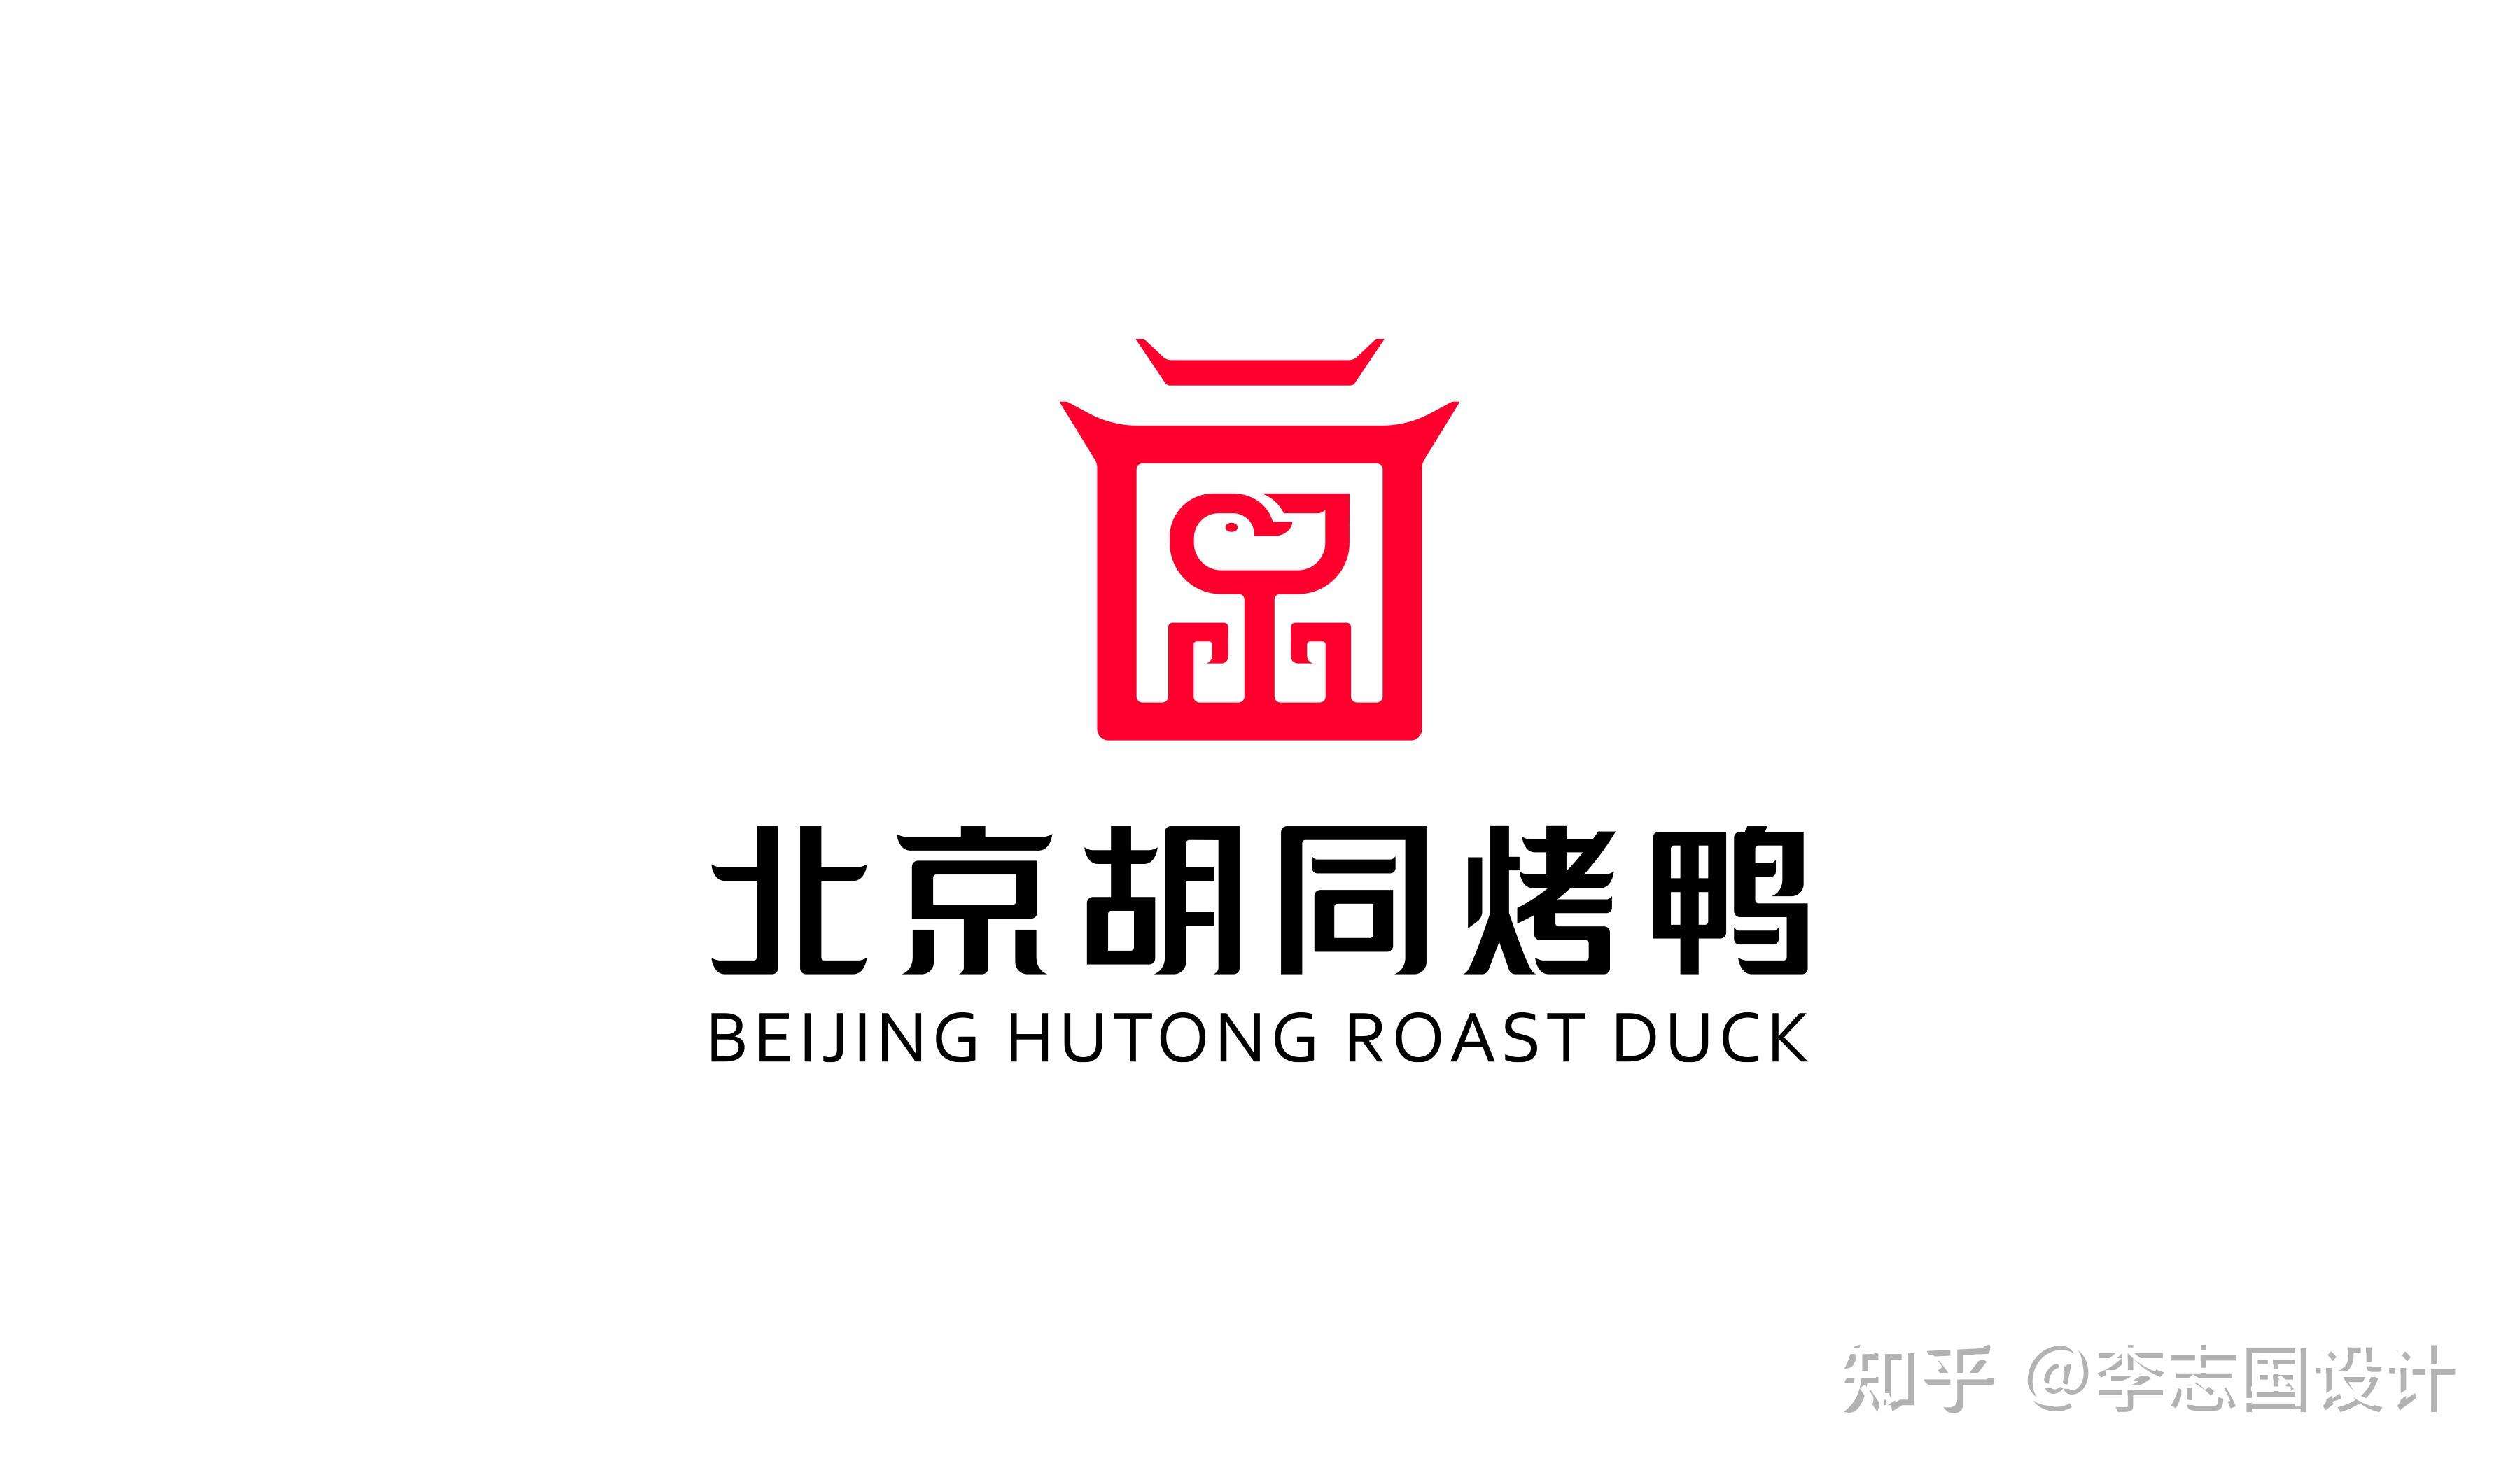 德宜盛北京烤鸭-Vi设计作品|公司-特创易·GO